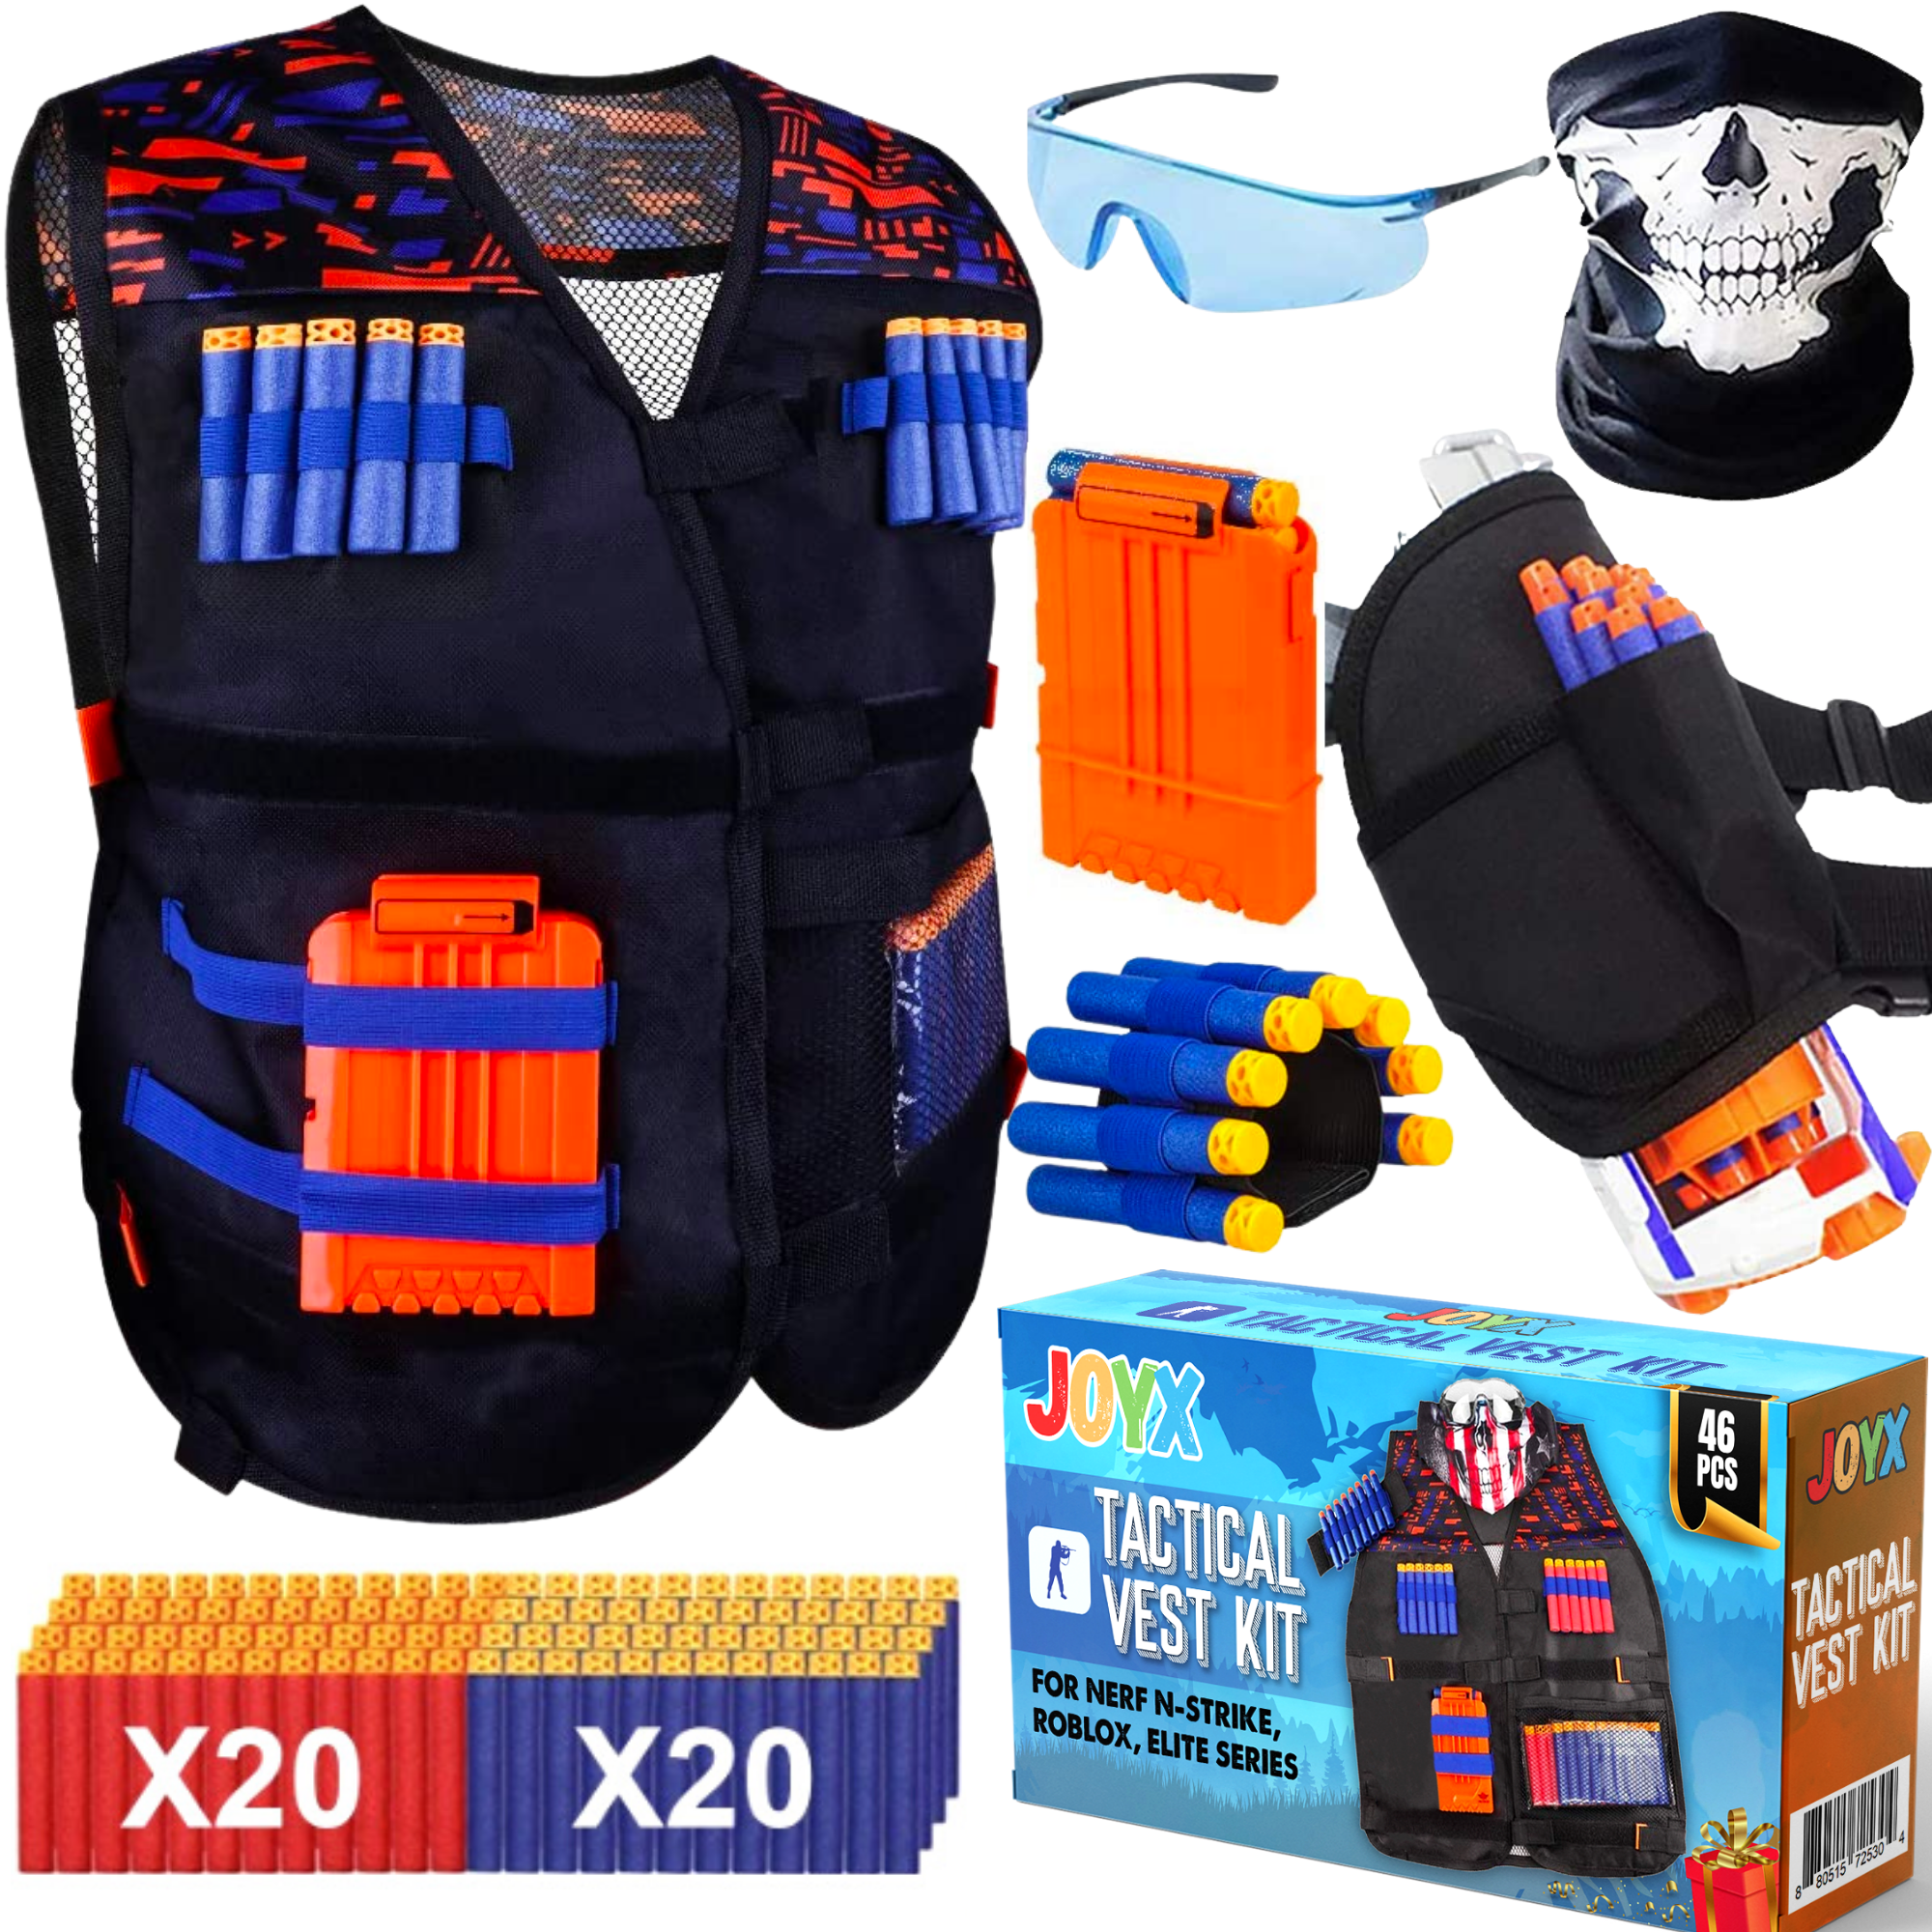 Kids tactical vest wisfox kids elite tactical vest for n-strike Elite... 